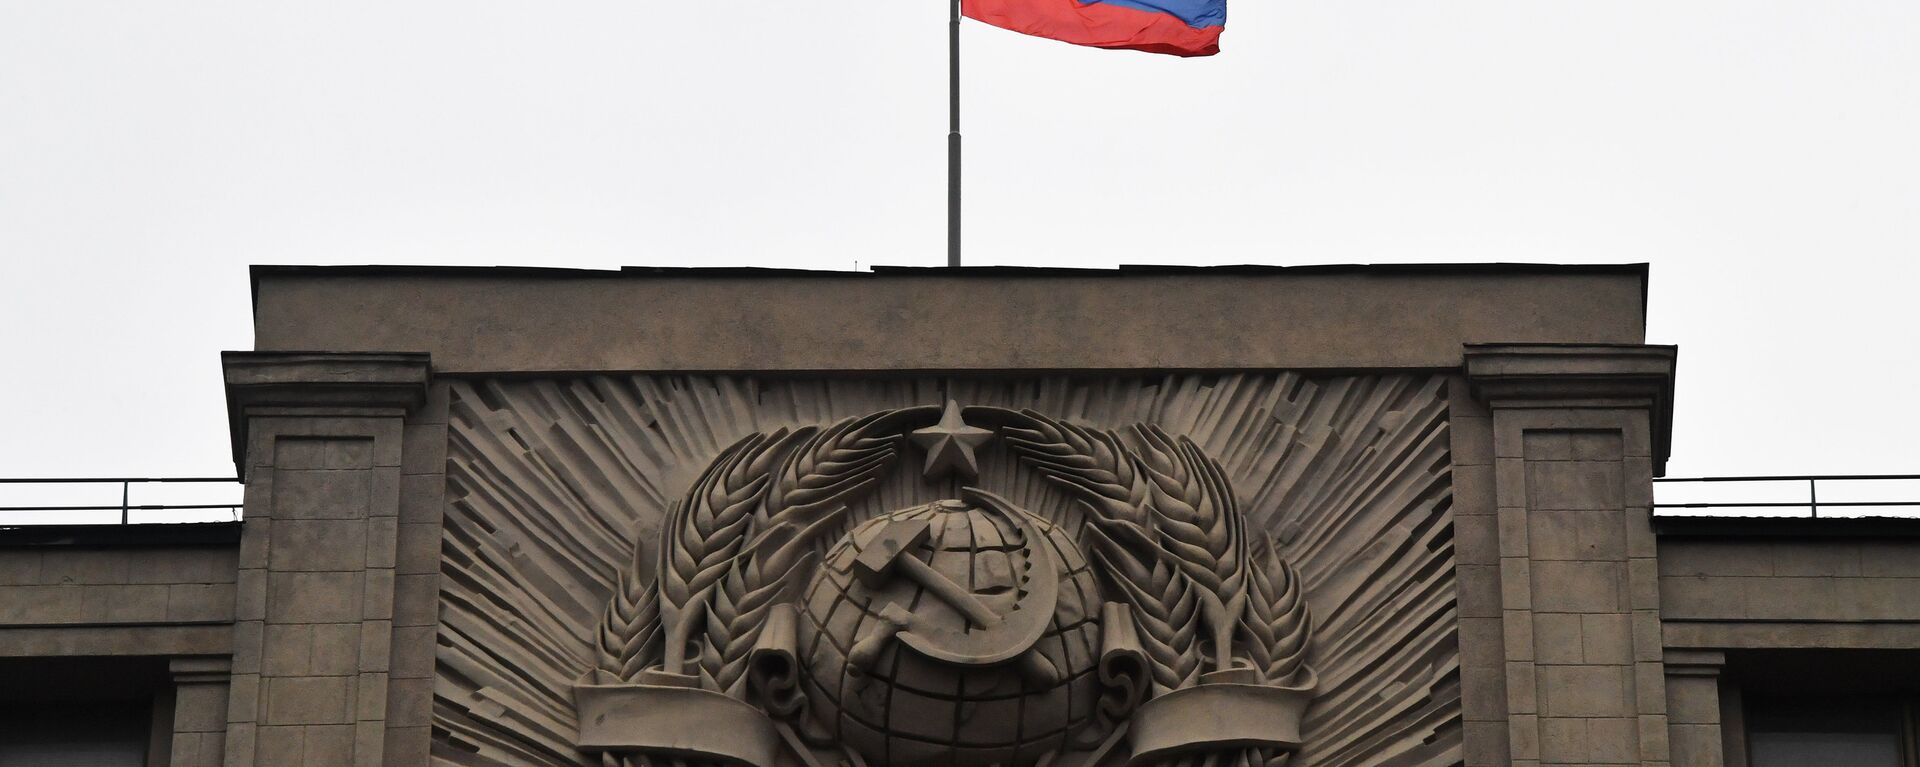 Флаг на здании Государственной Думы РФ на улице Охотный ряд в Москве - Sputnik Латвия, 1920, 04.09.2018